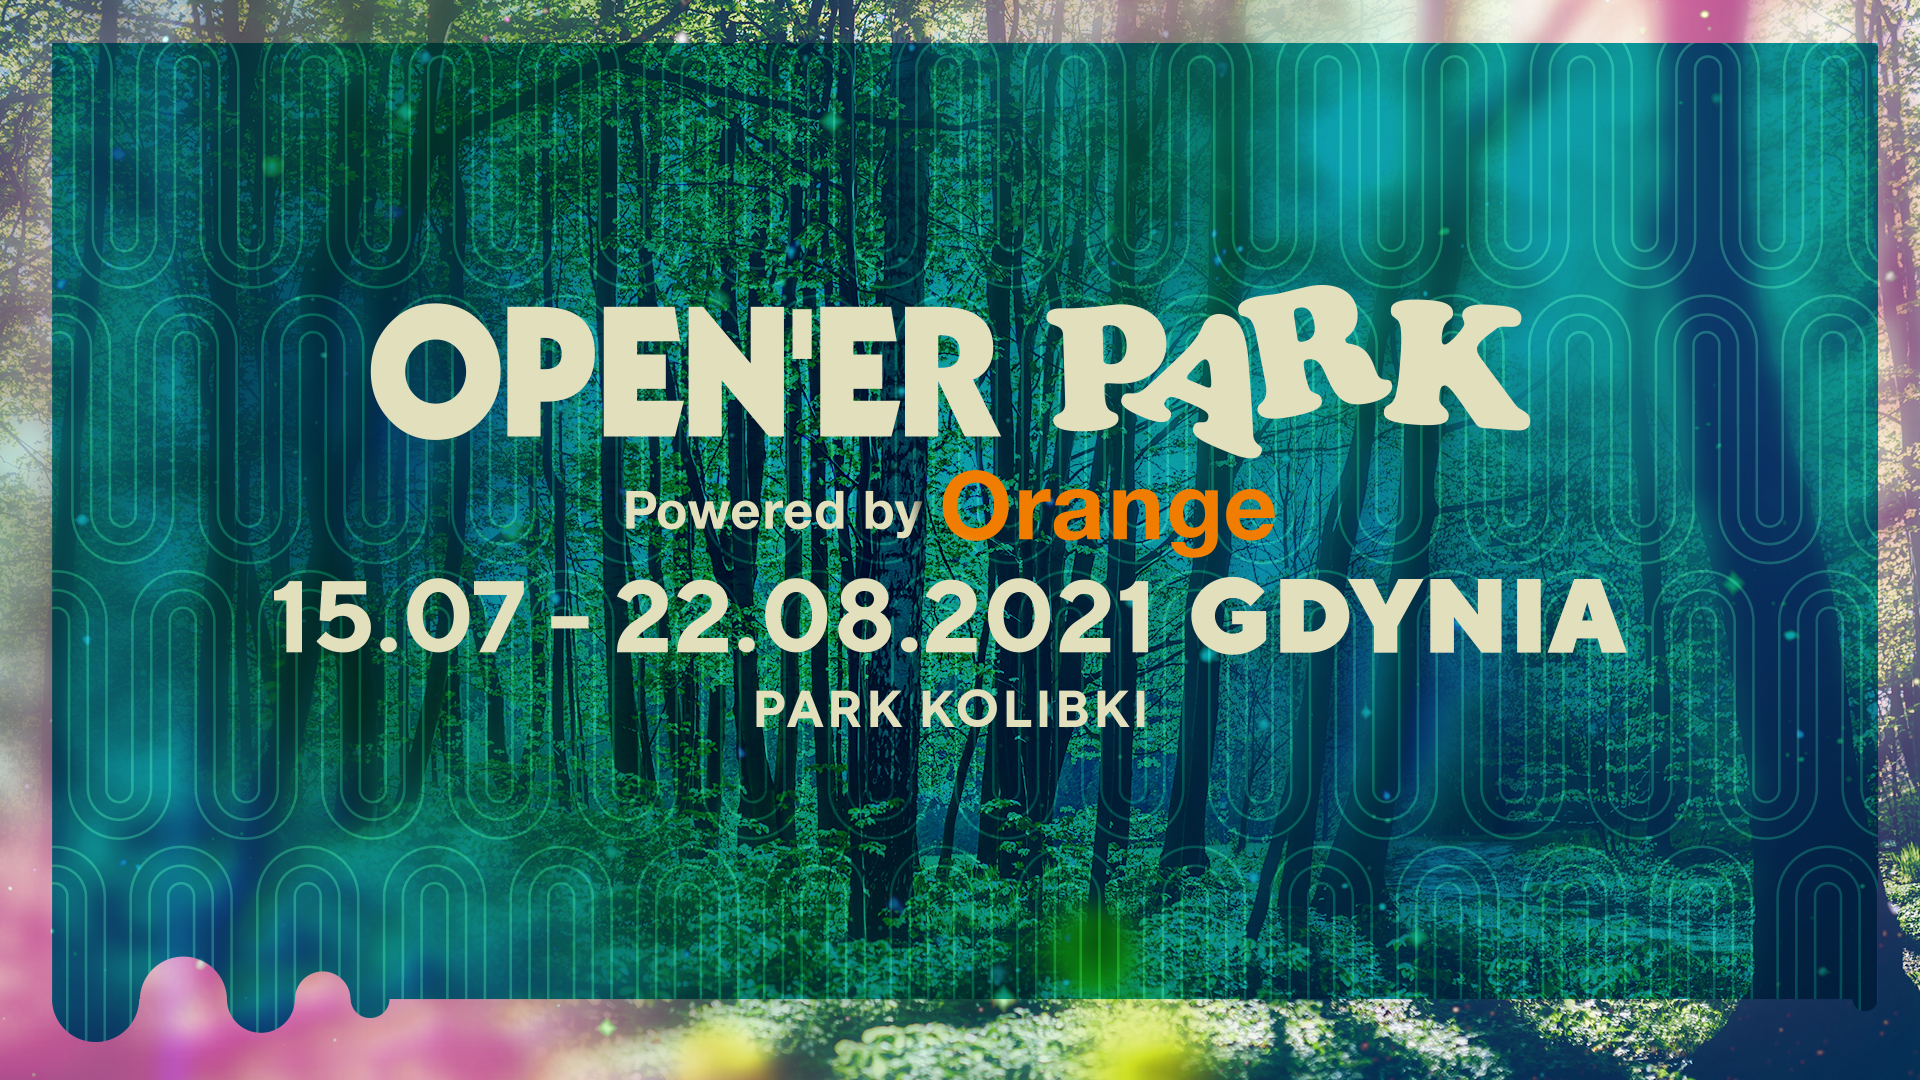 AKTUALIZACJA: Open’er Park Powered by Orange: Silent Disco, konkursy i Music Pass za 0 zł na rok